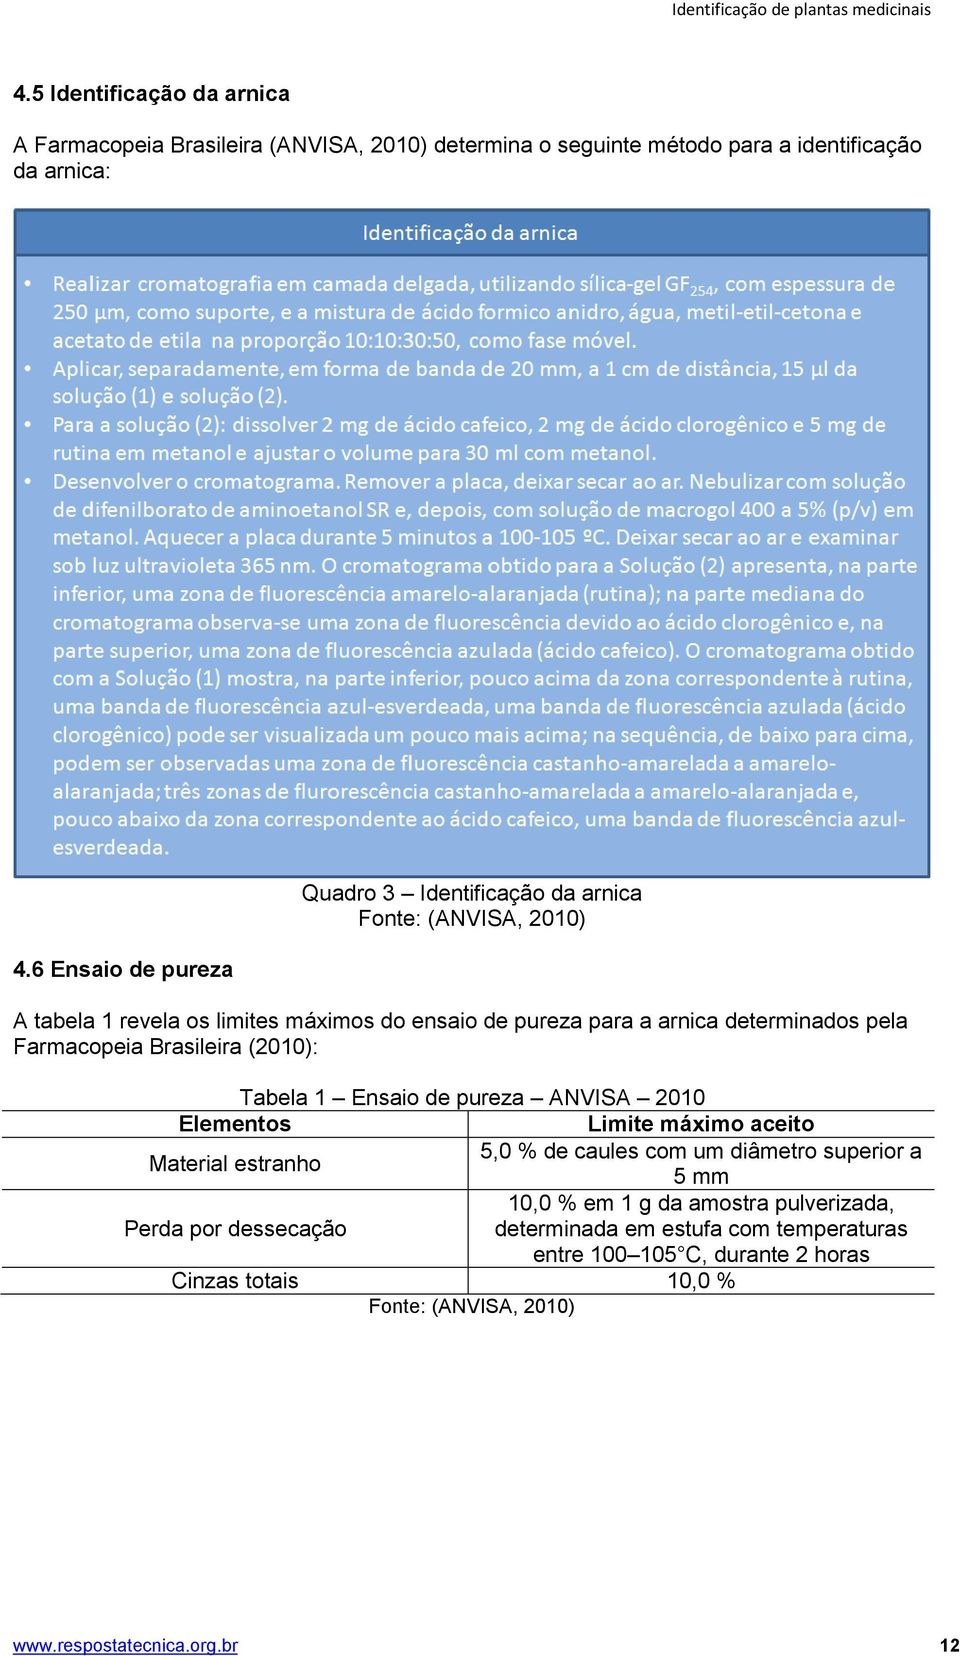 Brasileira (2010): Tabela 1 Ensaio de pureza ANVISA 2010 Elementos Limite máximo aceito 5,0 % de caules com um diâmetro superior a Material estranho 5 mm 10,0 % em 1 g da